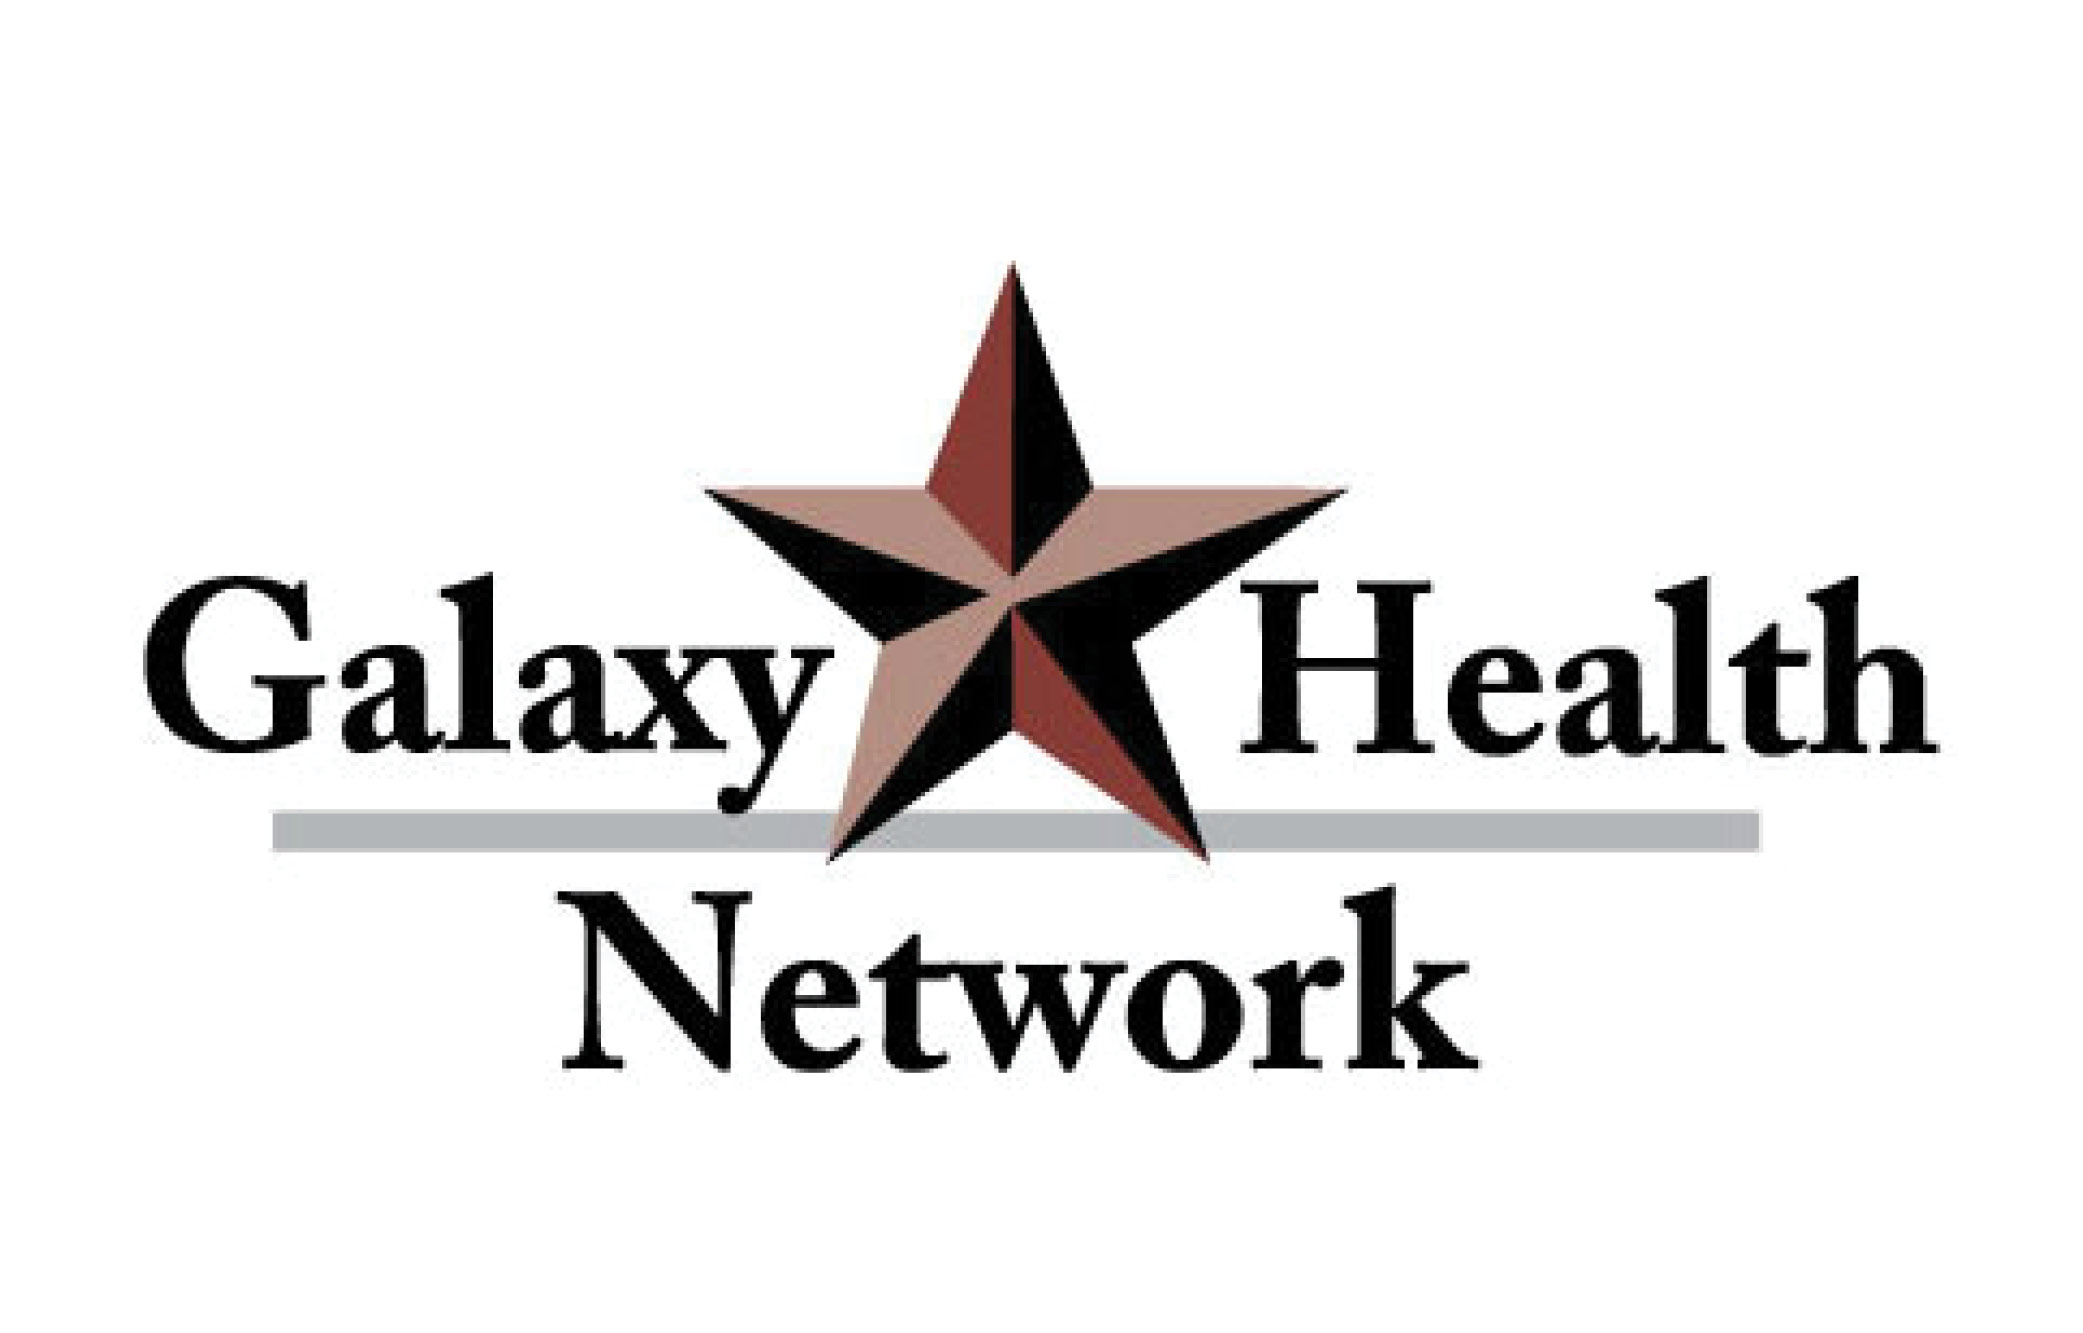 Galaxy Health Network